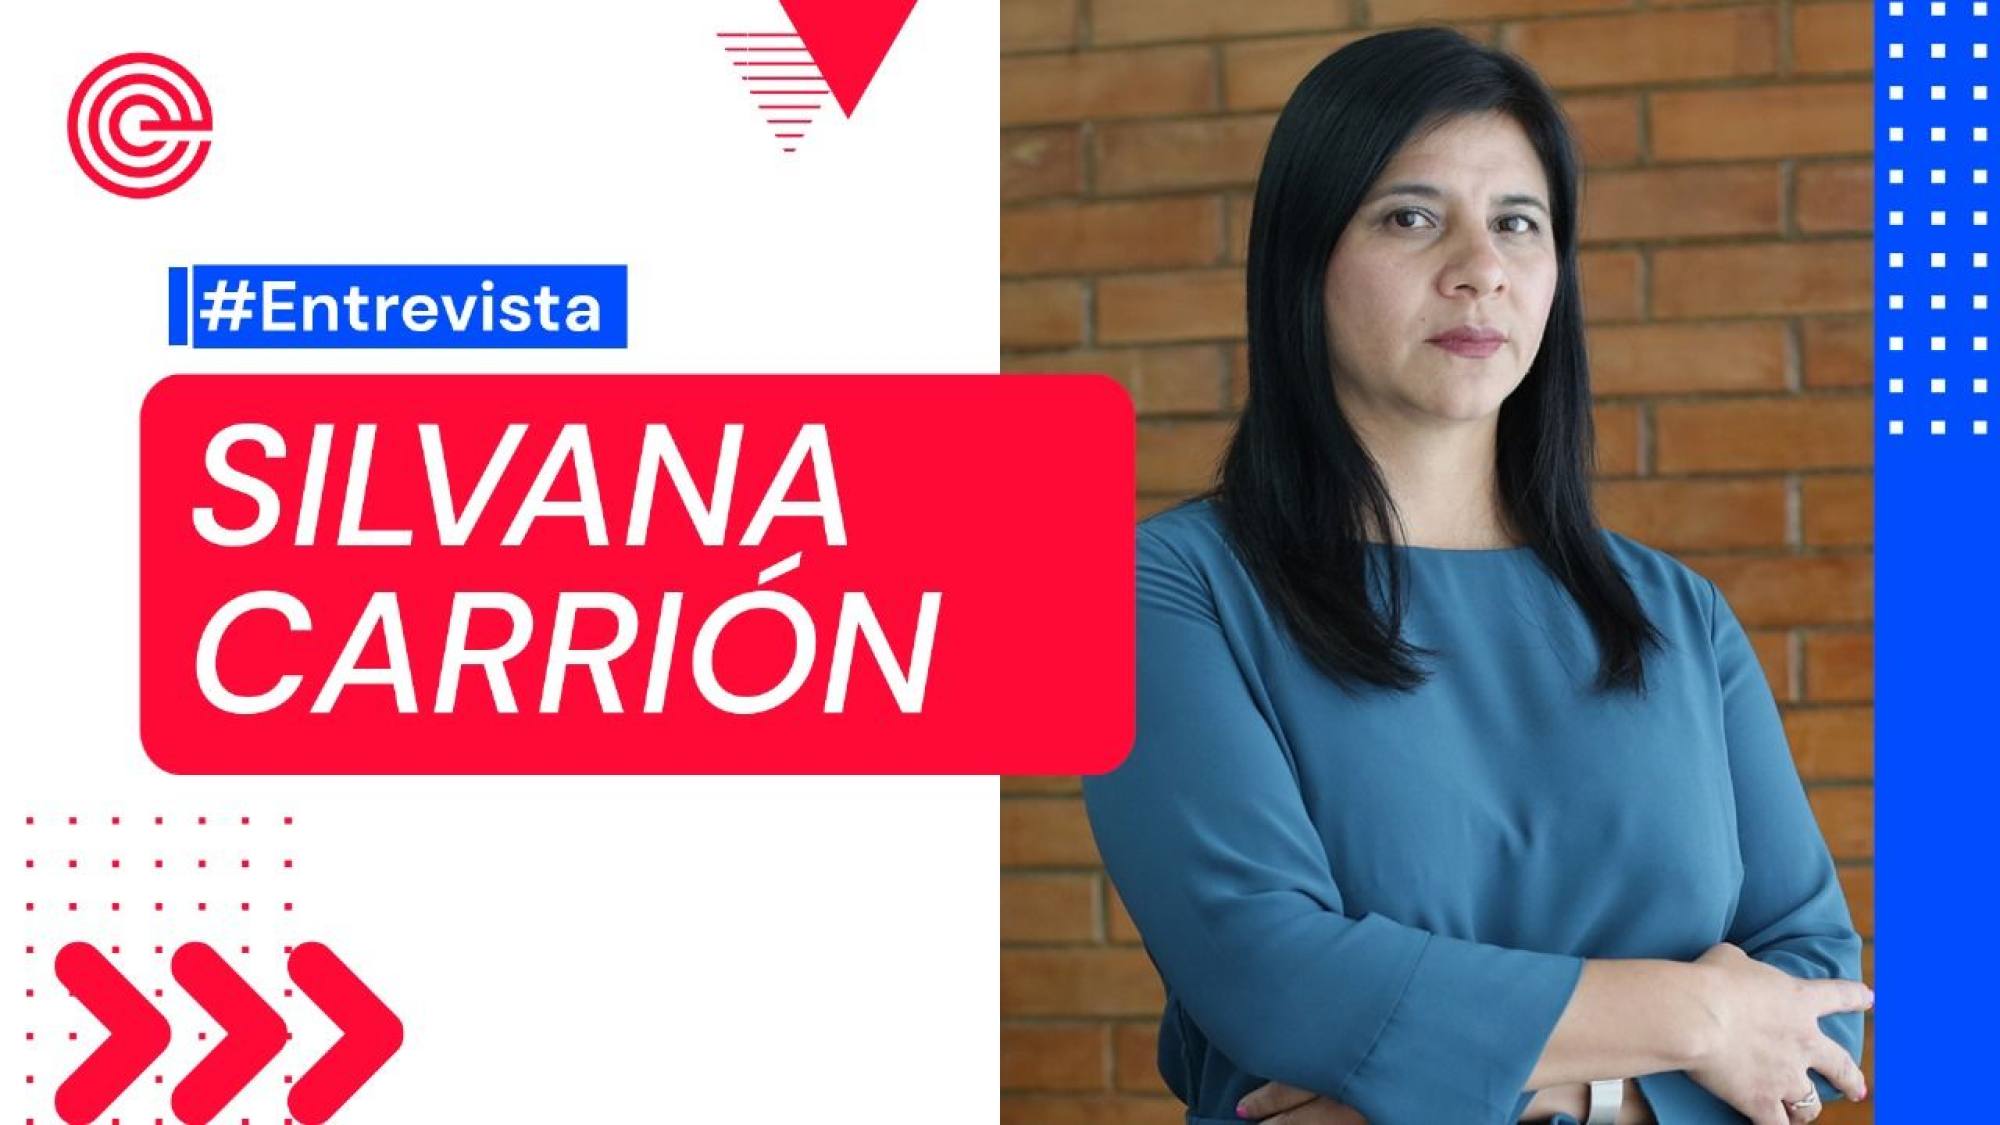 Habla procuradora del caso Lava Jato Silvana Carrión, Epicentro TV